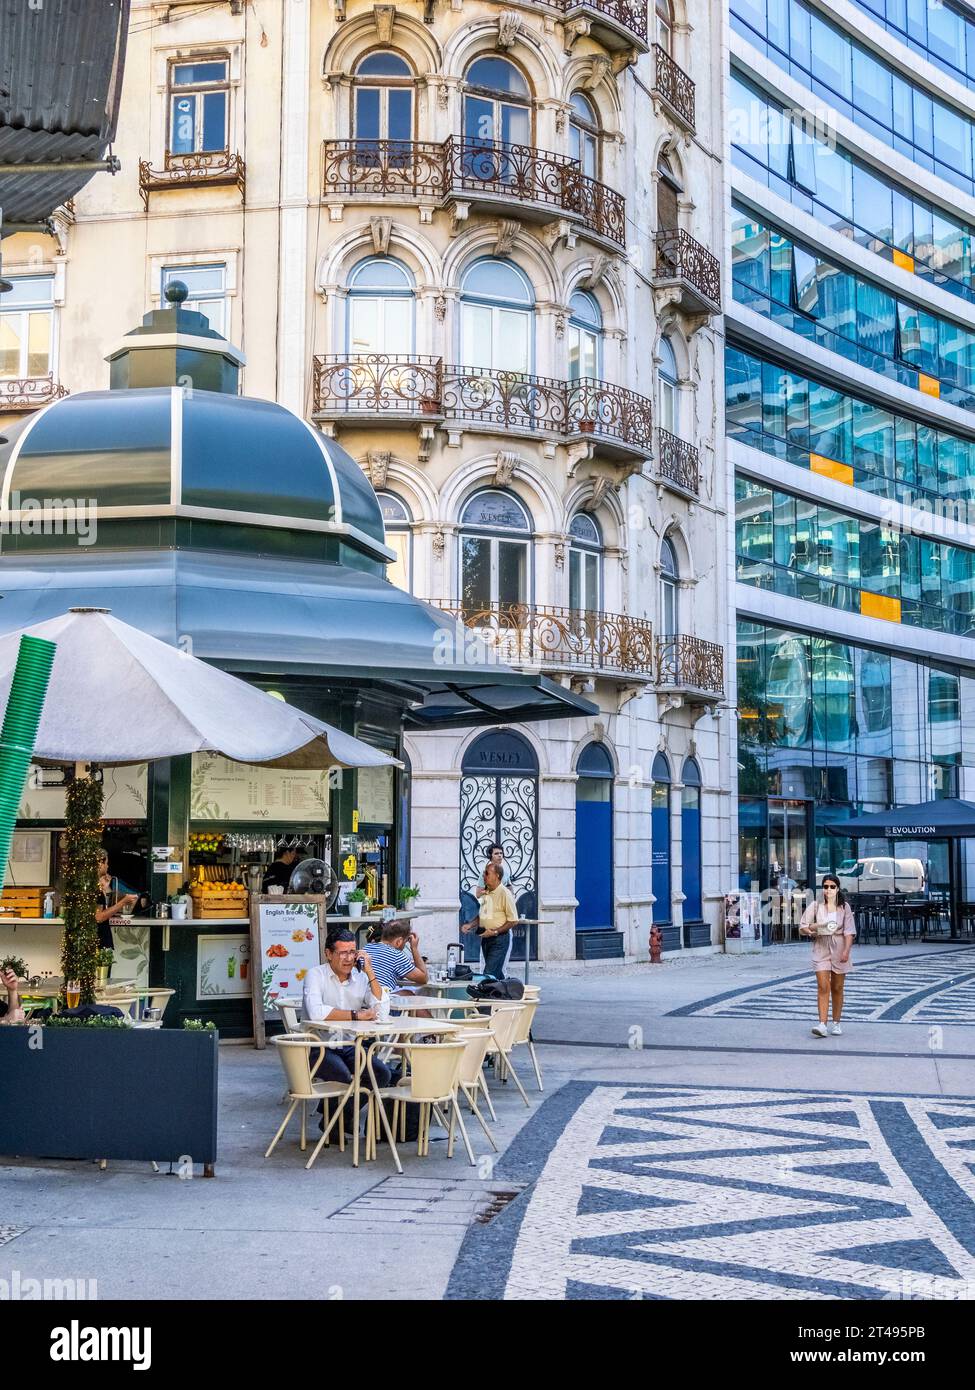 Outdoor cafe on Praça do Duque de Saldanha or Duke of Saldanha Square in Lisbon Portugal Stock Photo